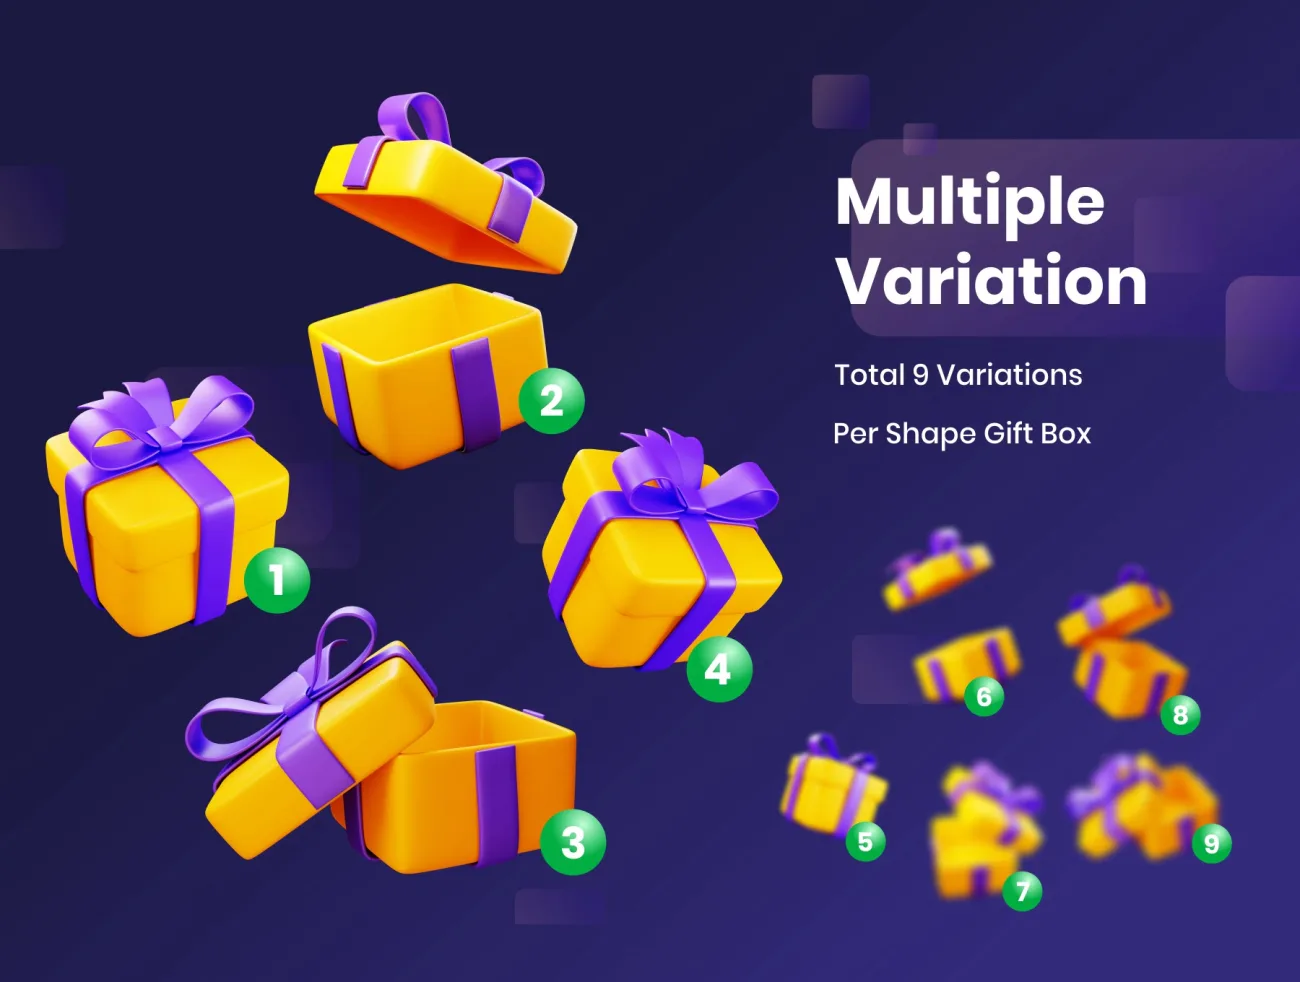 70款各式各样礼盒3D图标模型 Gift Boxes - 3D Illustration .blend. psd. ai. xd. figma-3D/图标-到位啦UI